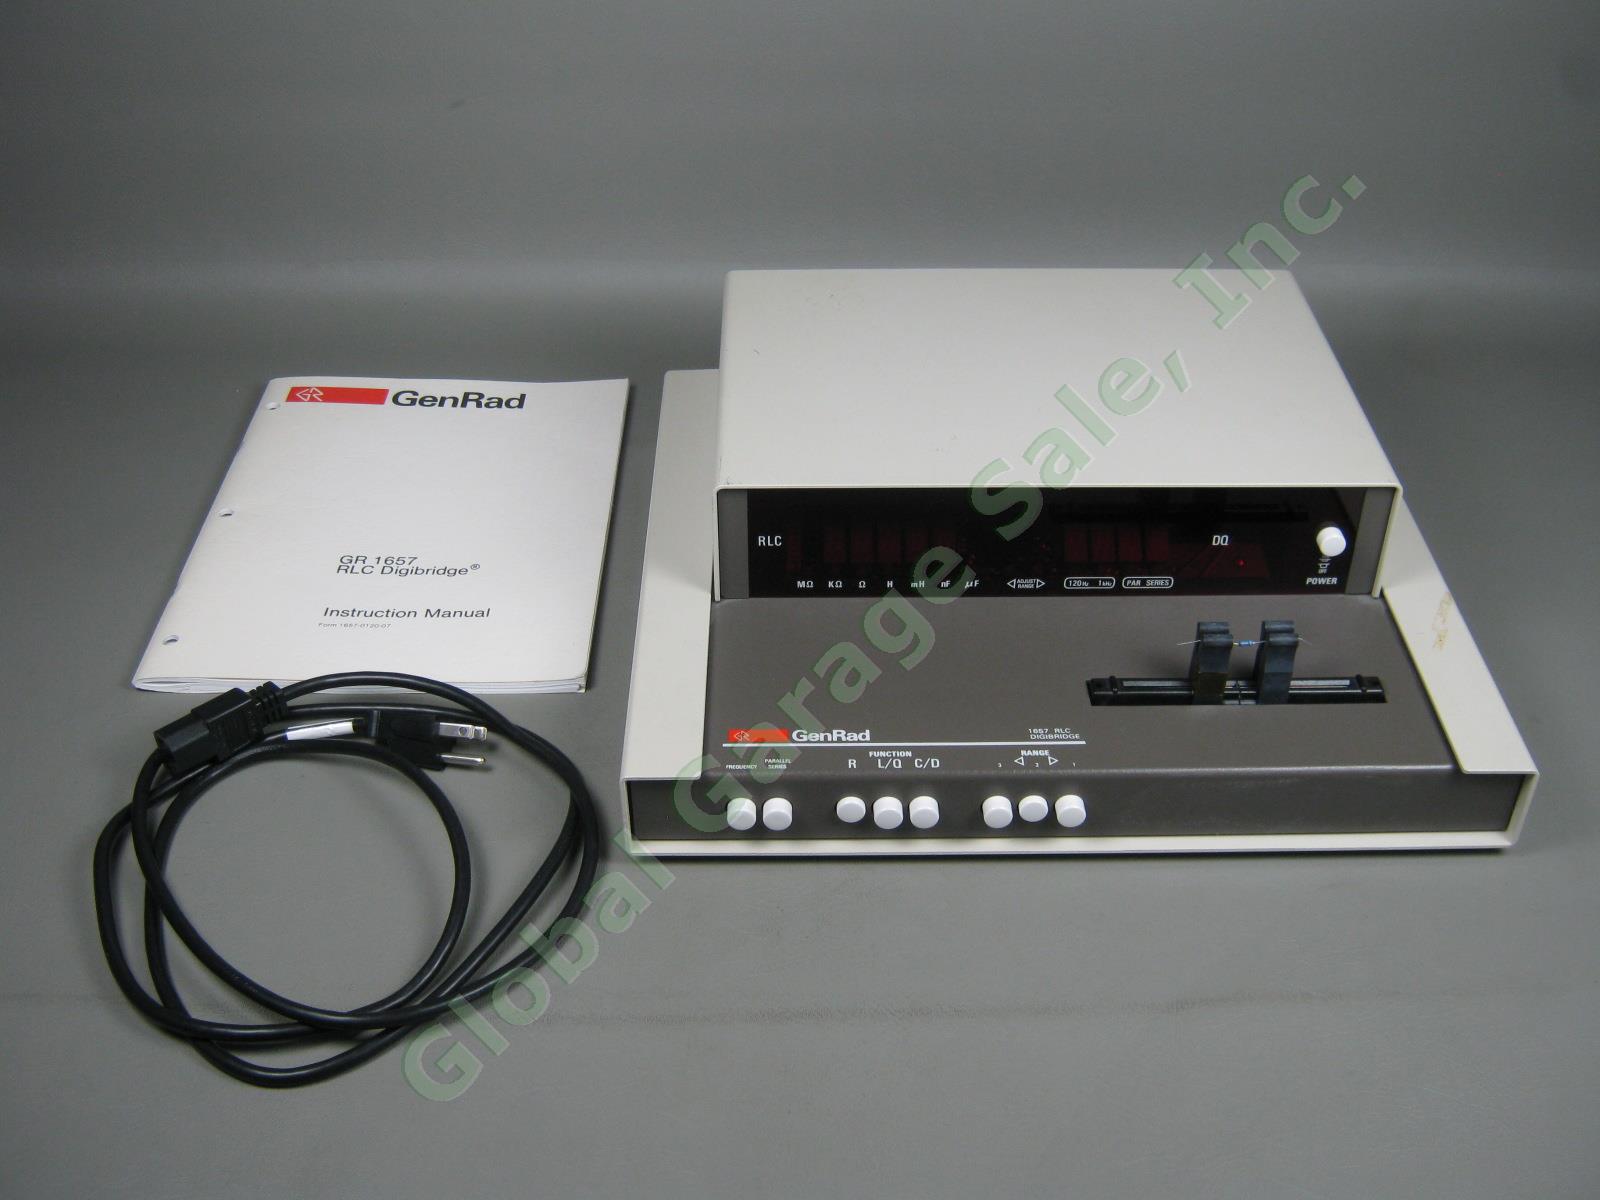 GenRad General Radio GR 1657 RLC Digibridge Digital Impedance Meter W/ Manual NR